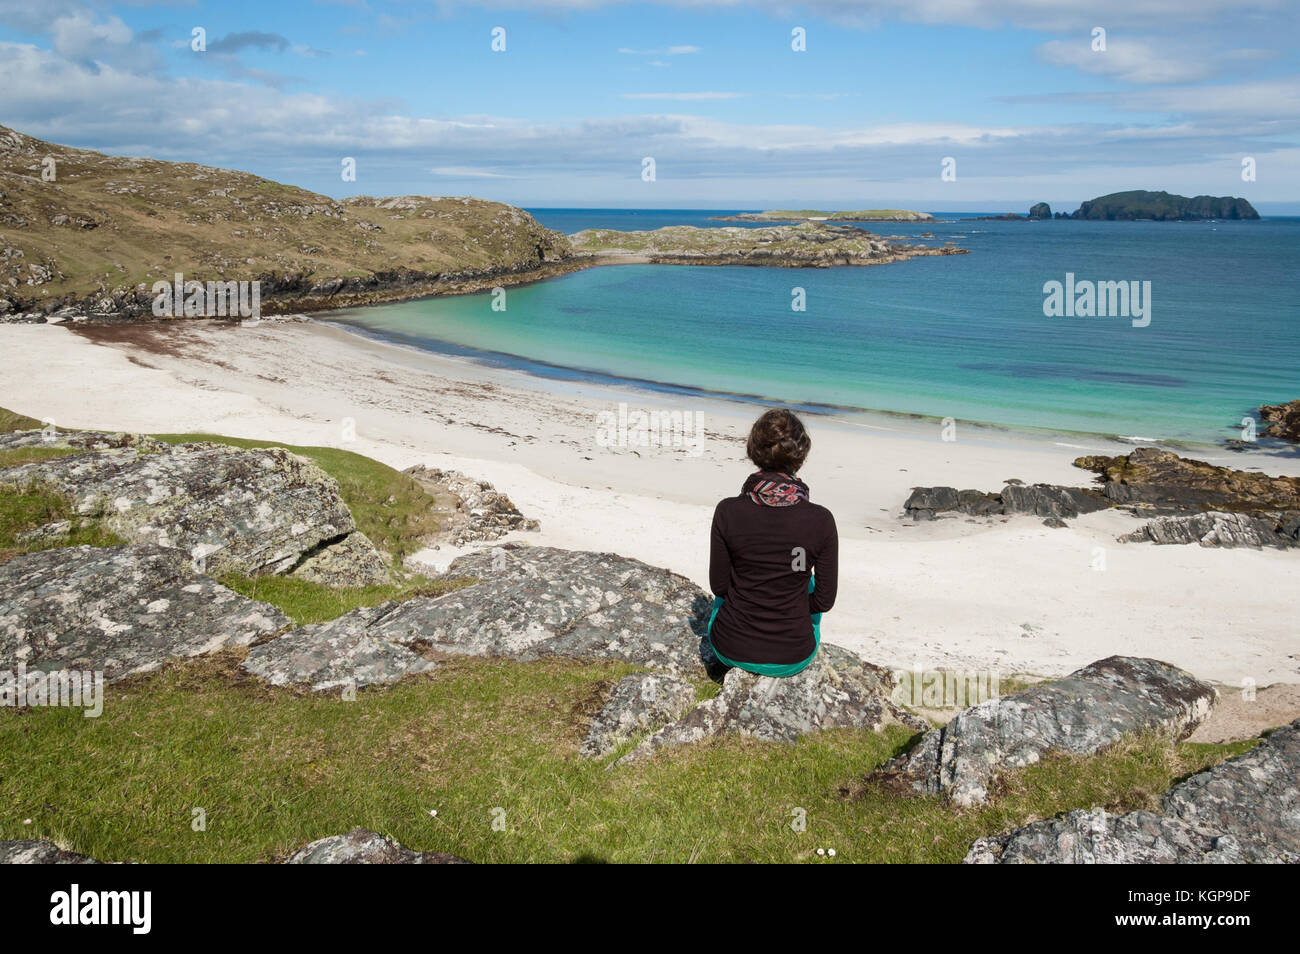 Joven turista sentado en frente de una playa de arena blanca del desierto con el azul del mar en la isla de Lewis, Hébridas Exteriores, Escocia (Reino Unido) Foto de stock